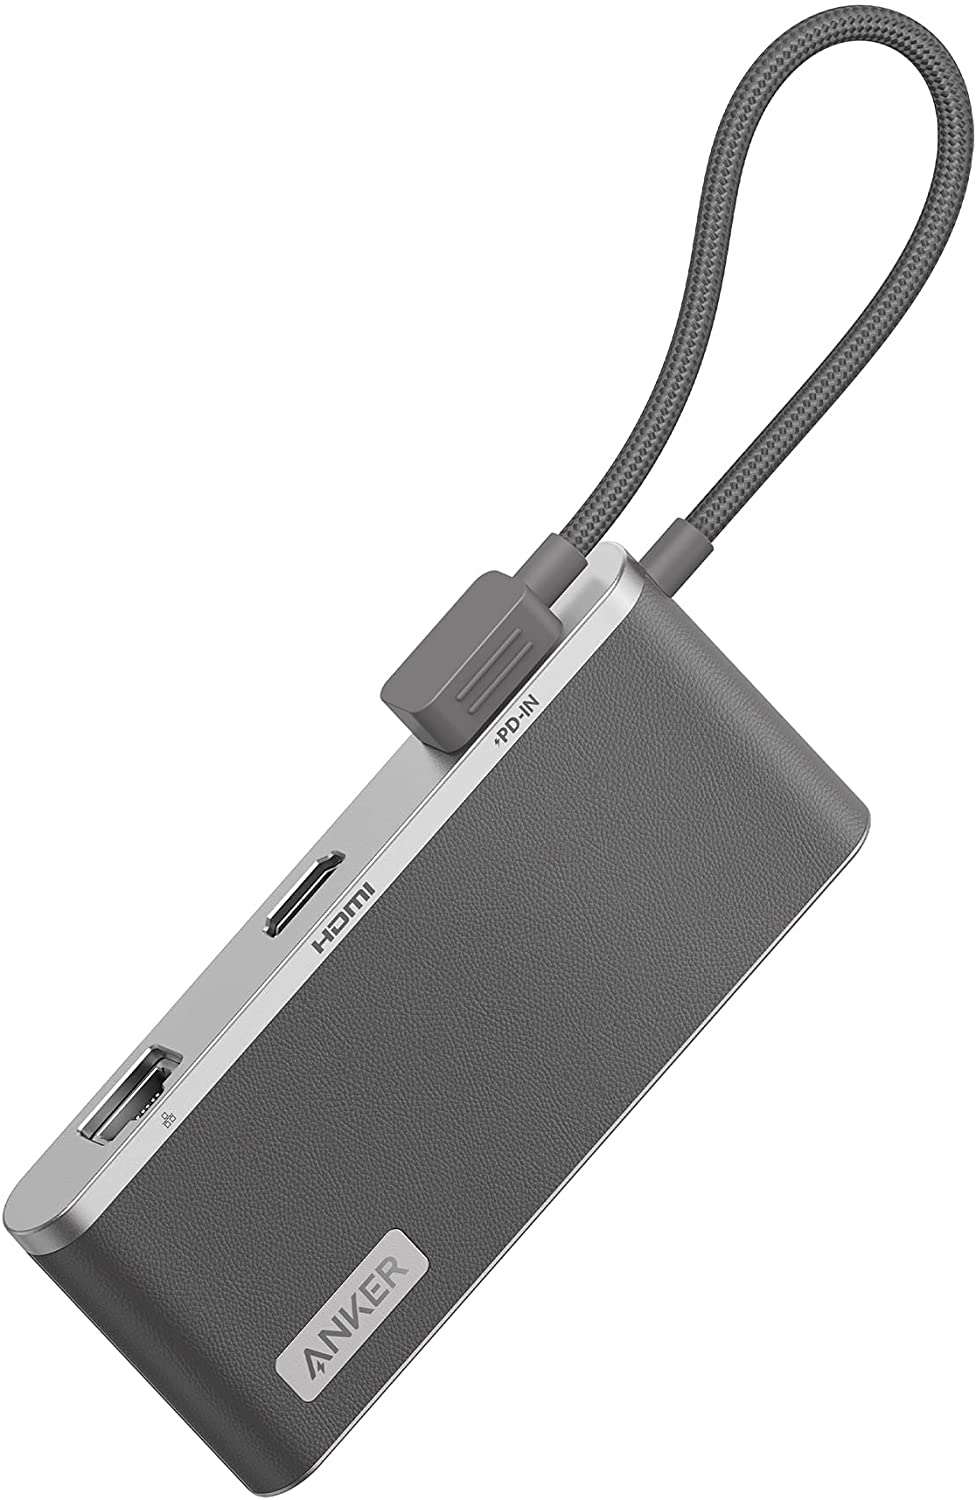 1週間以内発送 Anker 655 USB-C ハブ (8-in-1) 10Gbps 高速データ転送 USB-Aポート 100W USB Power Delivery対応 USB-Cポート 4K HDMIポート 1Gbps イーサネットポート microSD&SDカード スロット 3.5 mm オーディオジャック 搭載 MacBook Pro / Air他 (グレー)